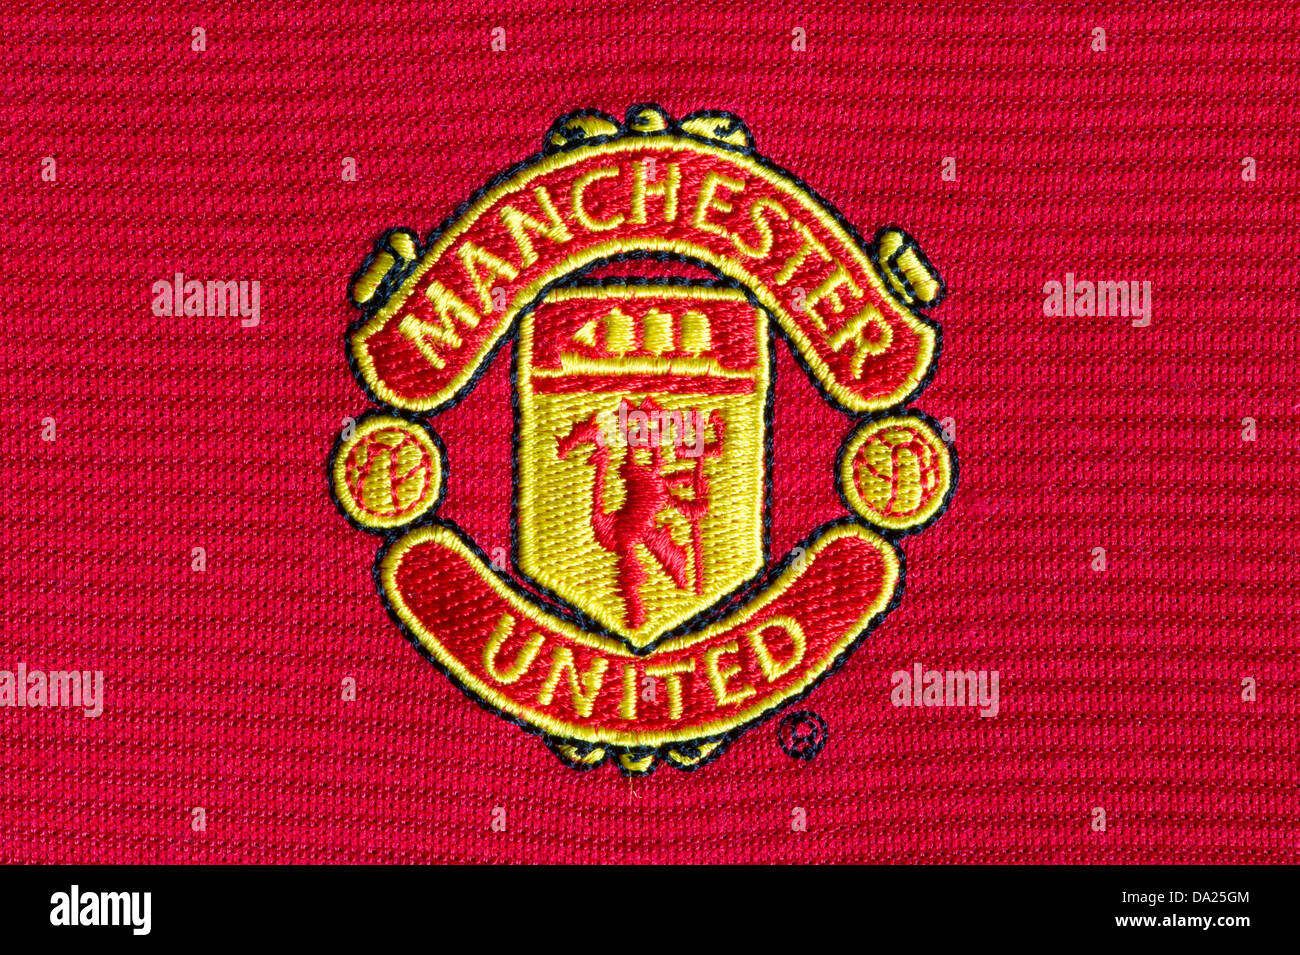 El Manchester United Football Club insignia como se ha visto en un juego de jersey (uso Editorial solamente). Foto de stock